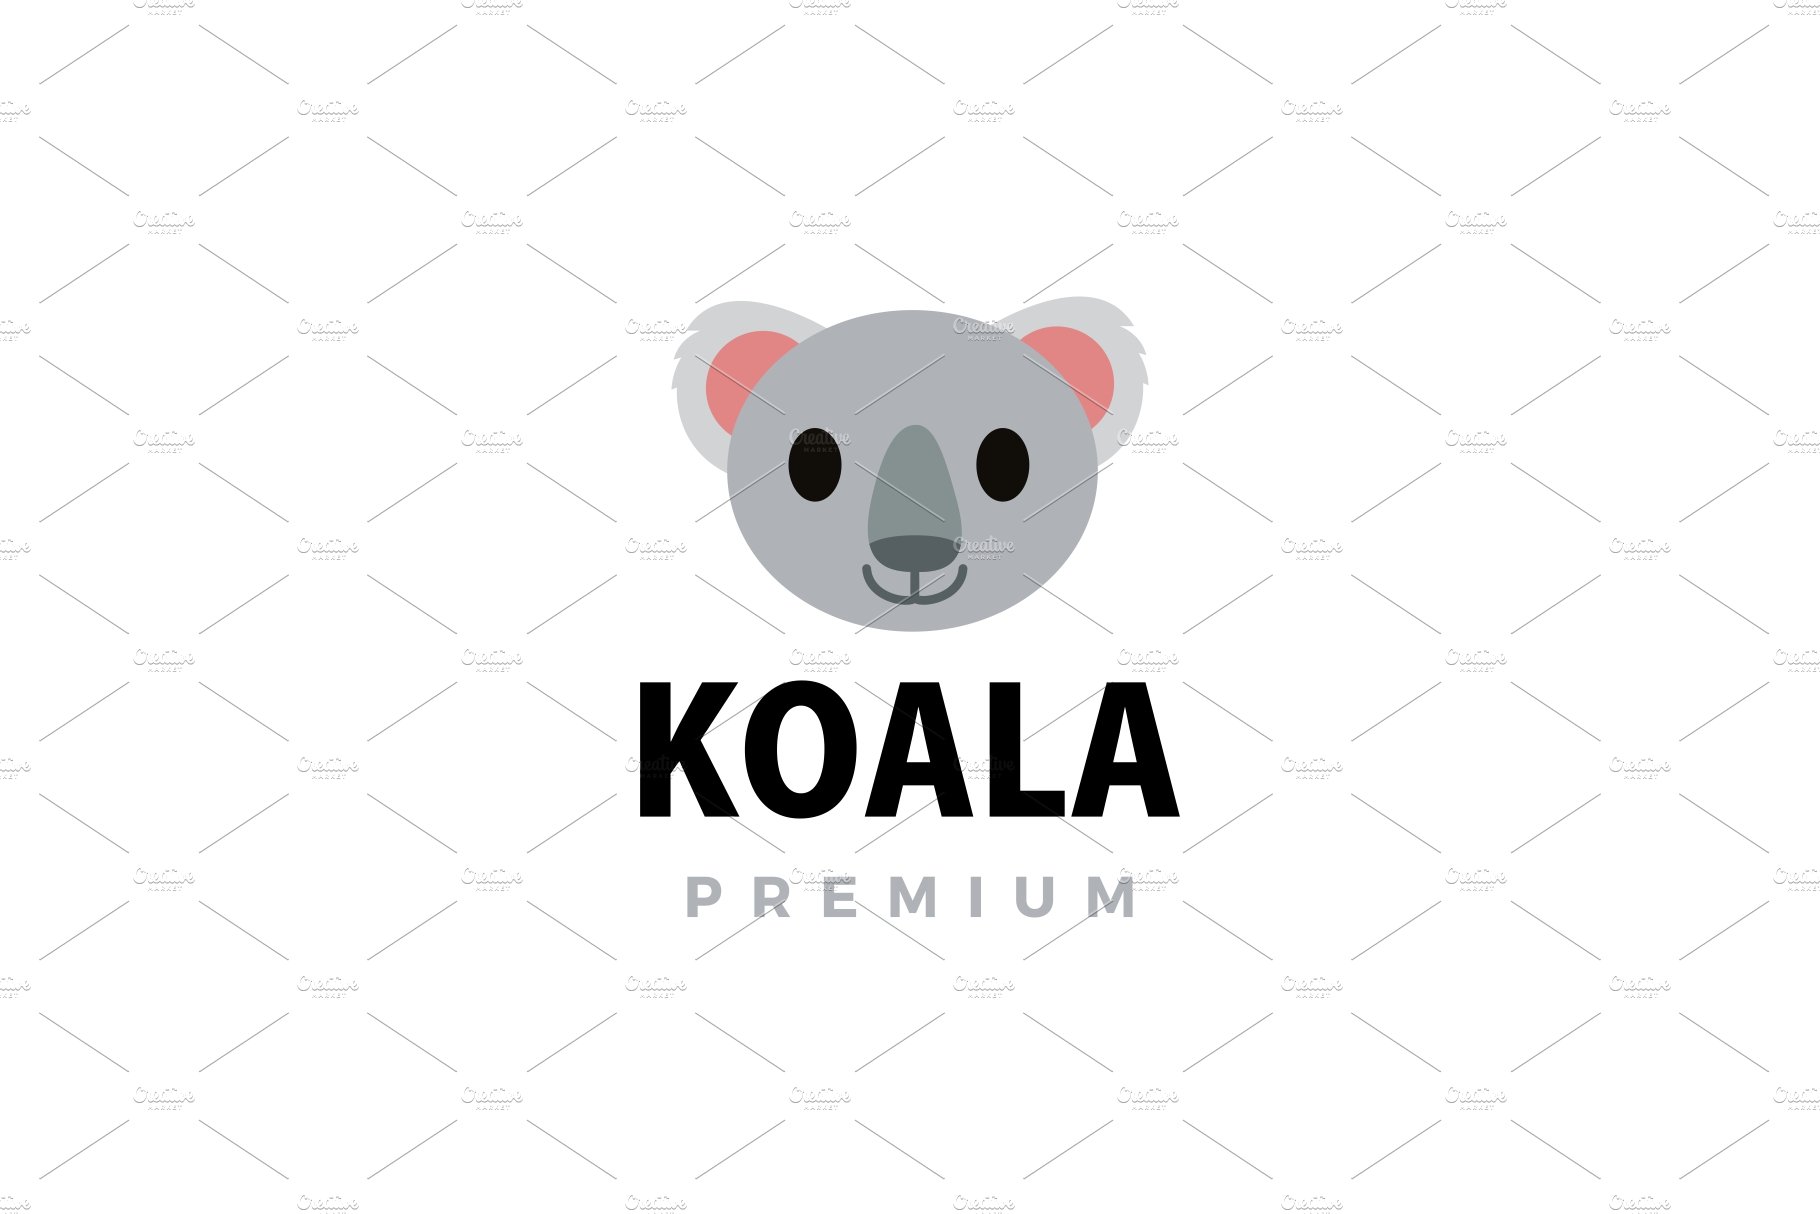 cute koala flat logo vector icon cover image.